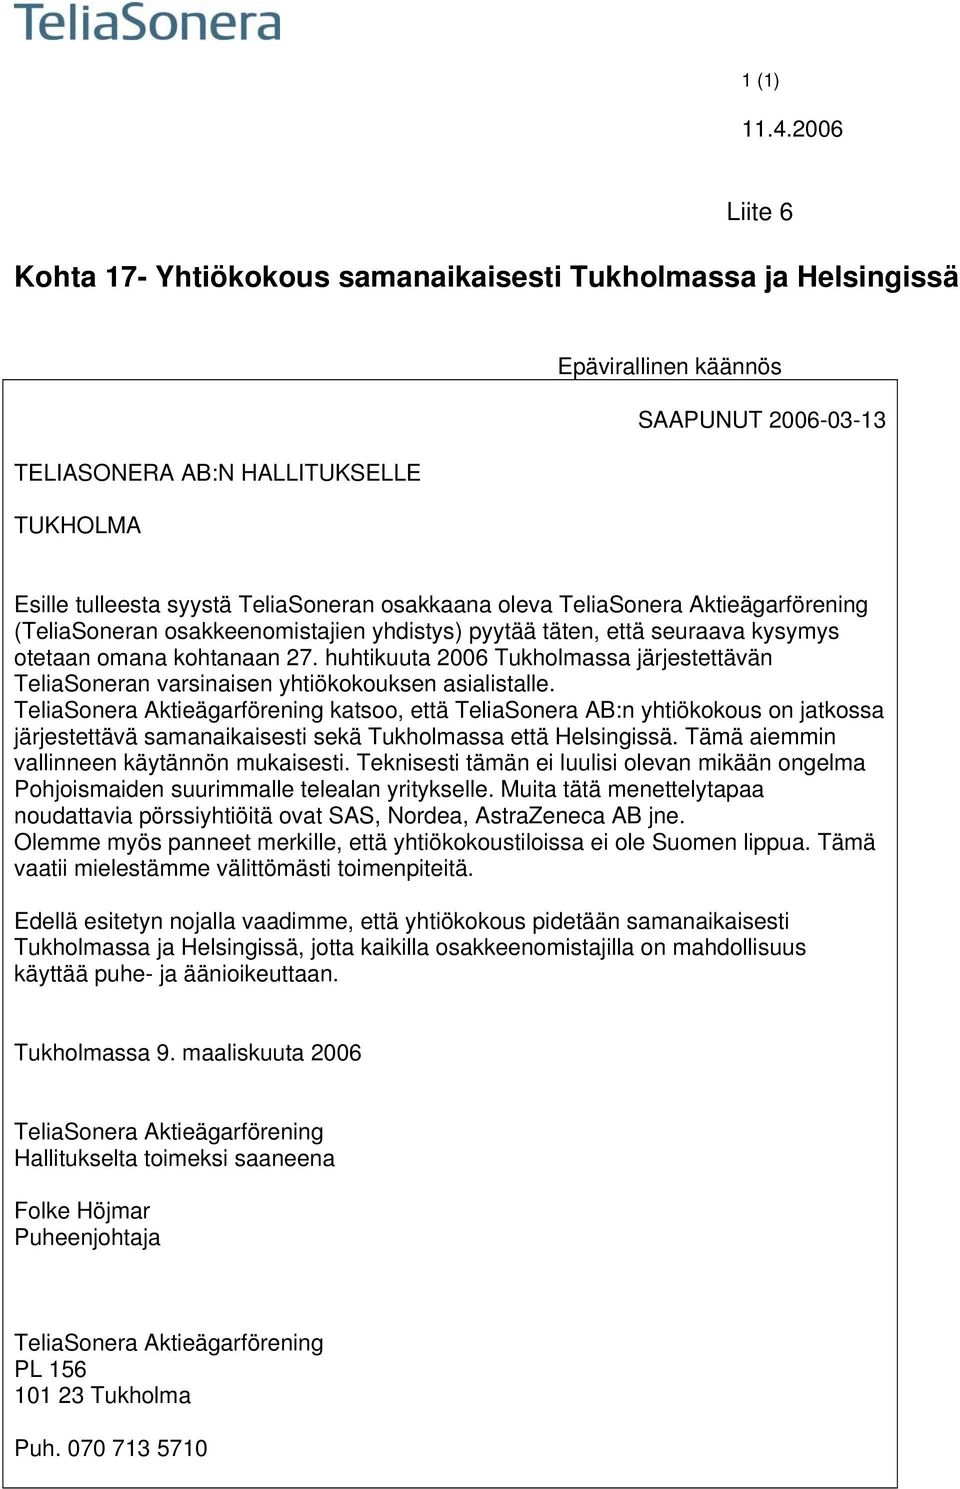 huhtikuuta 2006 Tukholmassa järjestettävän TeliaSoneran varsinaisen yhtiökokouksen asialistalle.